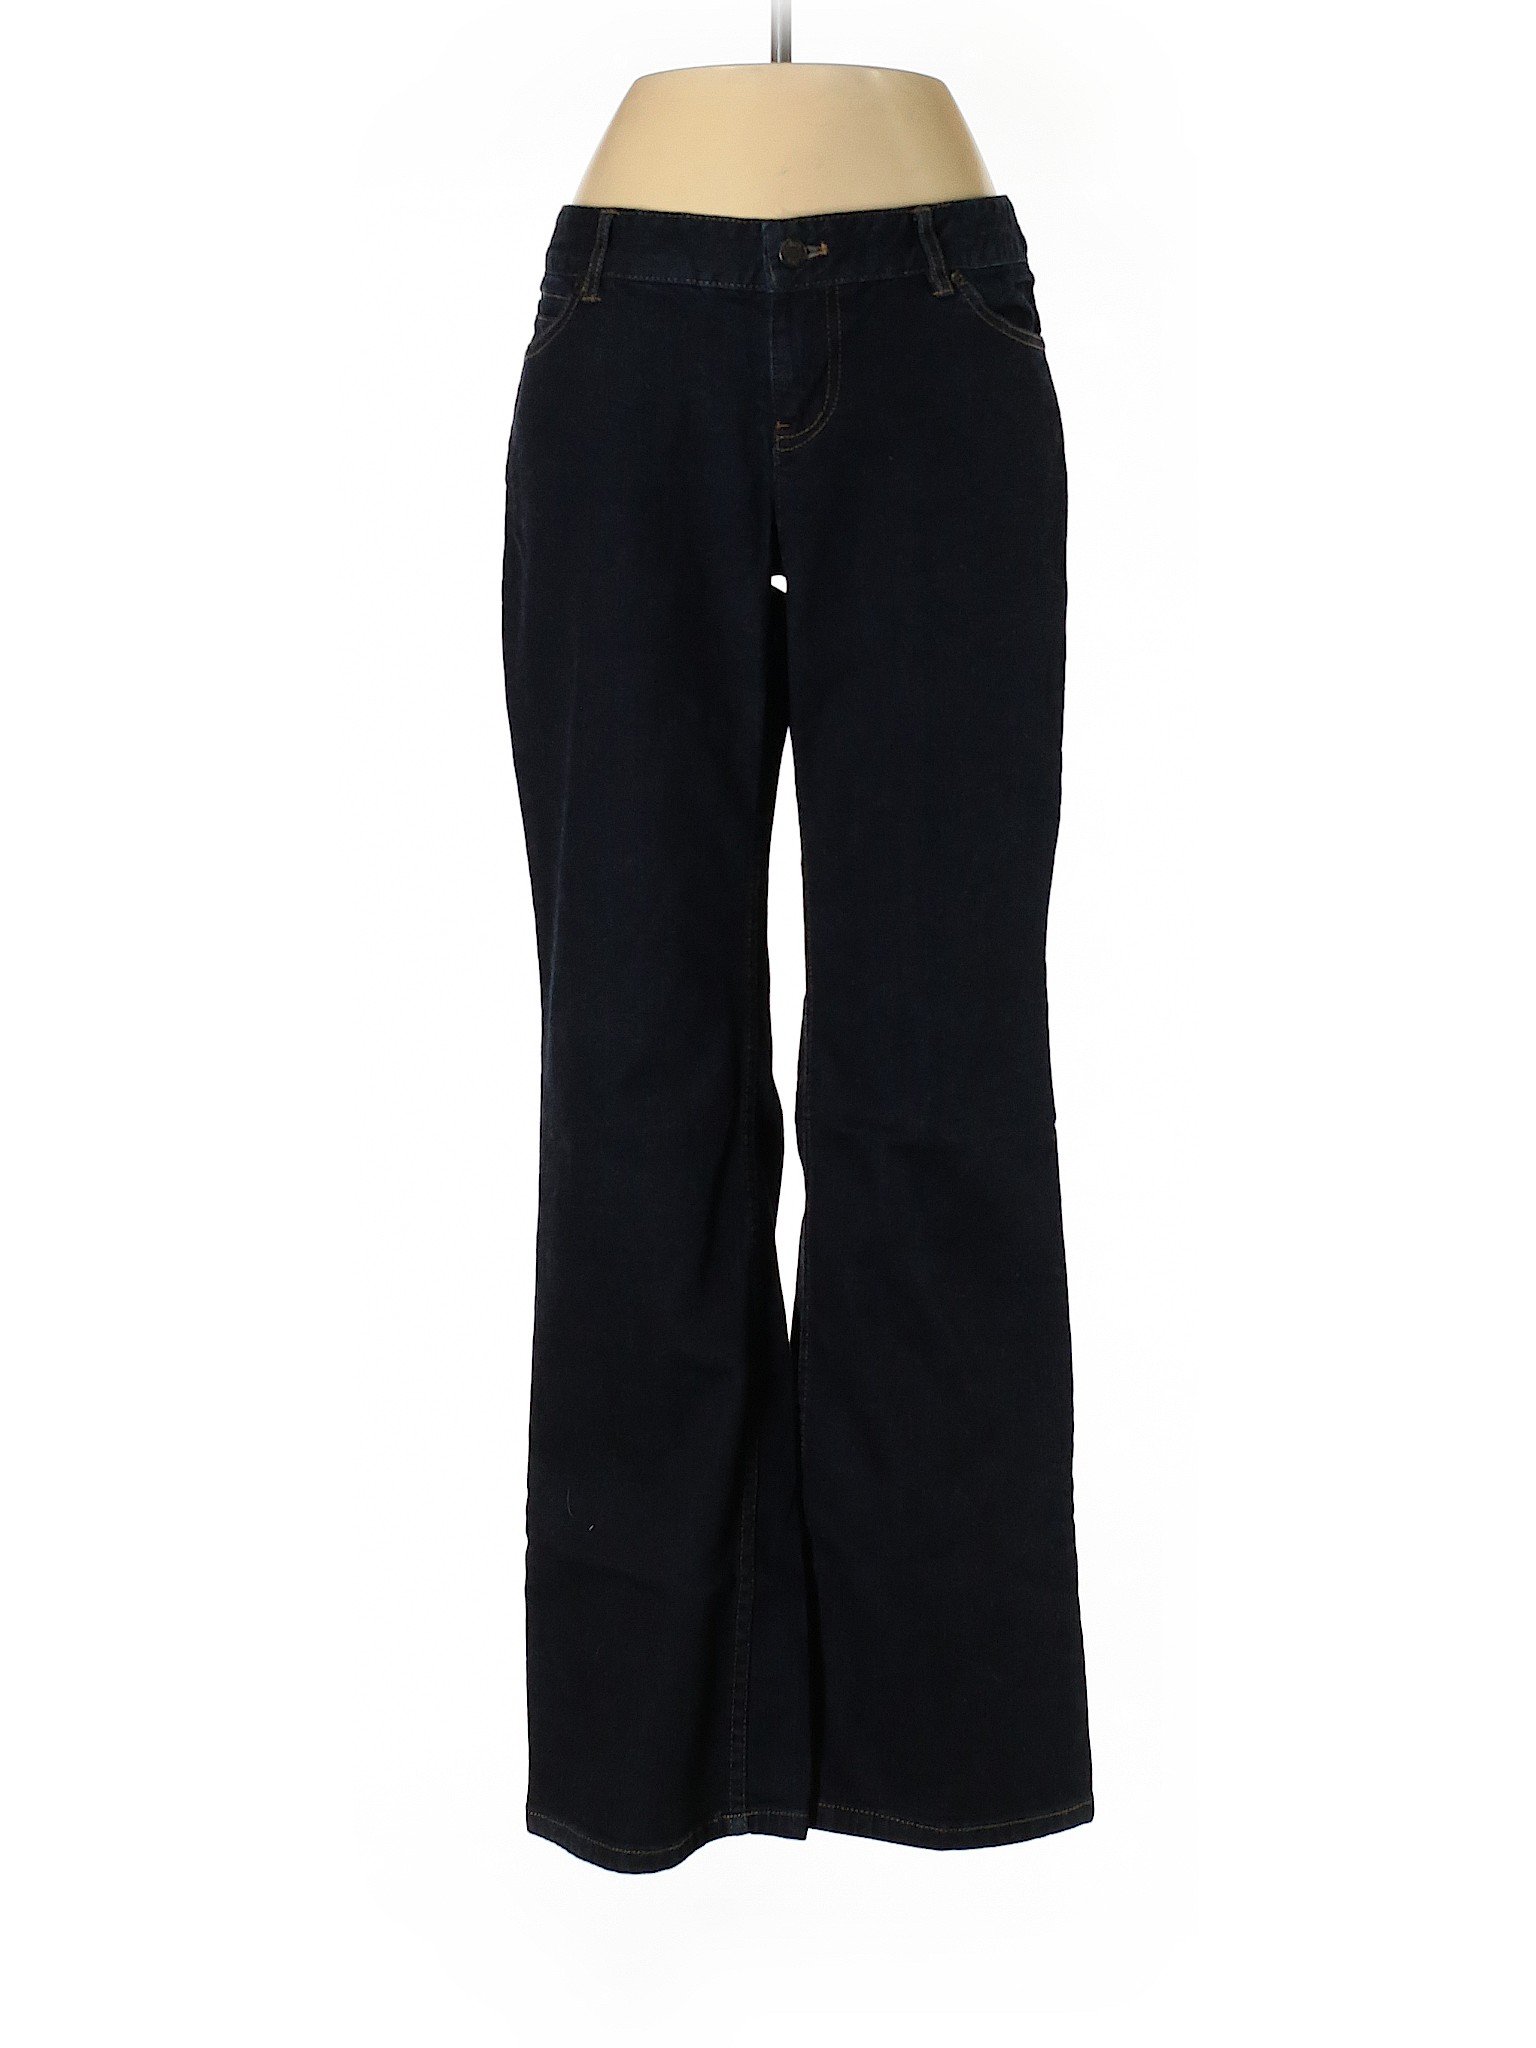 J.Jill Women Black Jeans 4 Petites | eBay